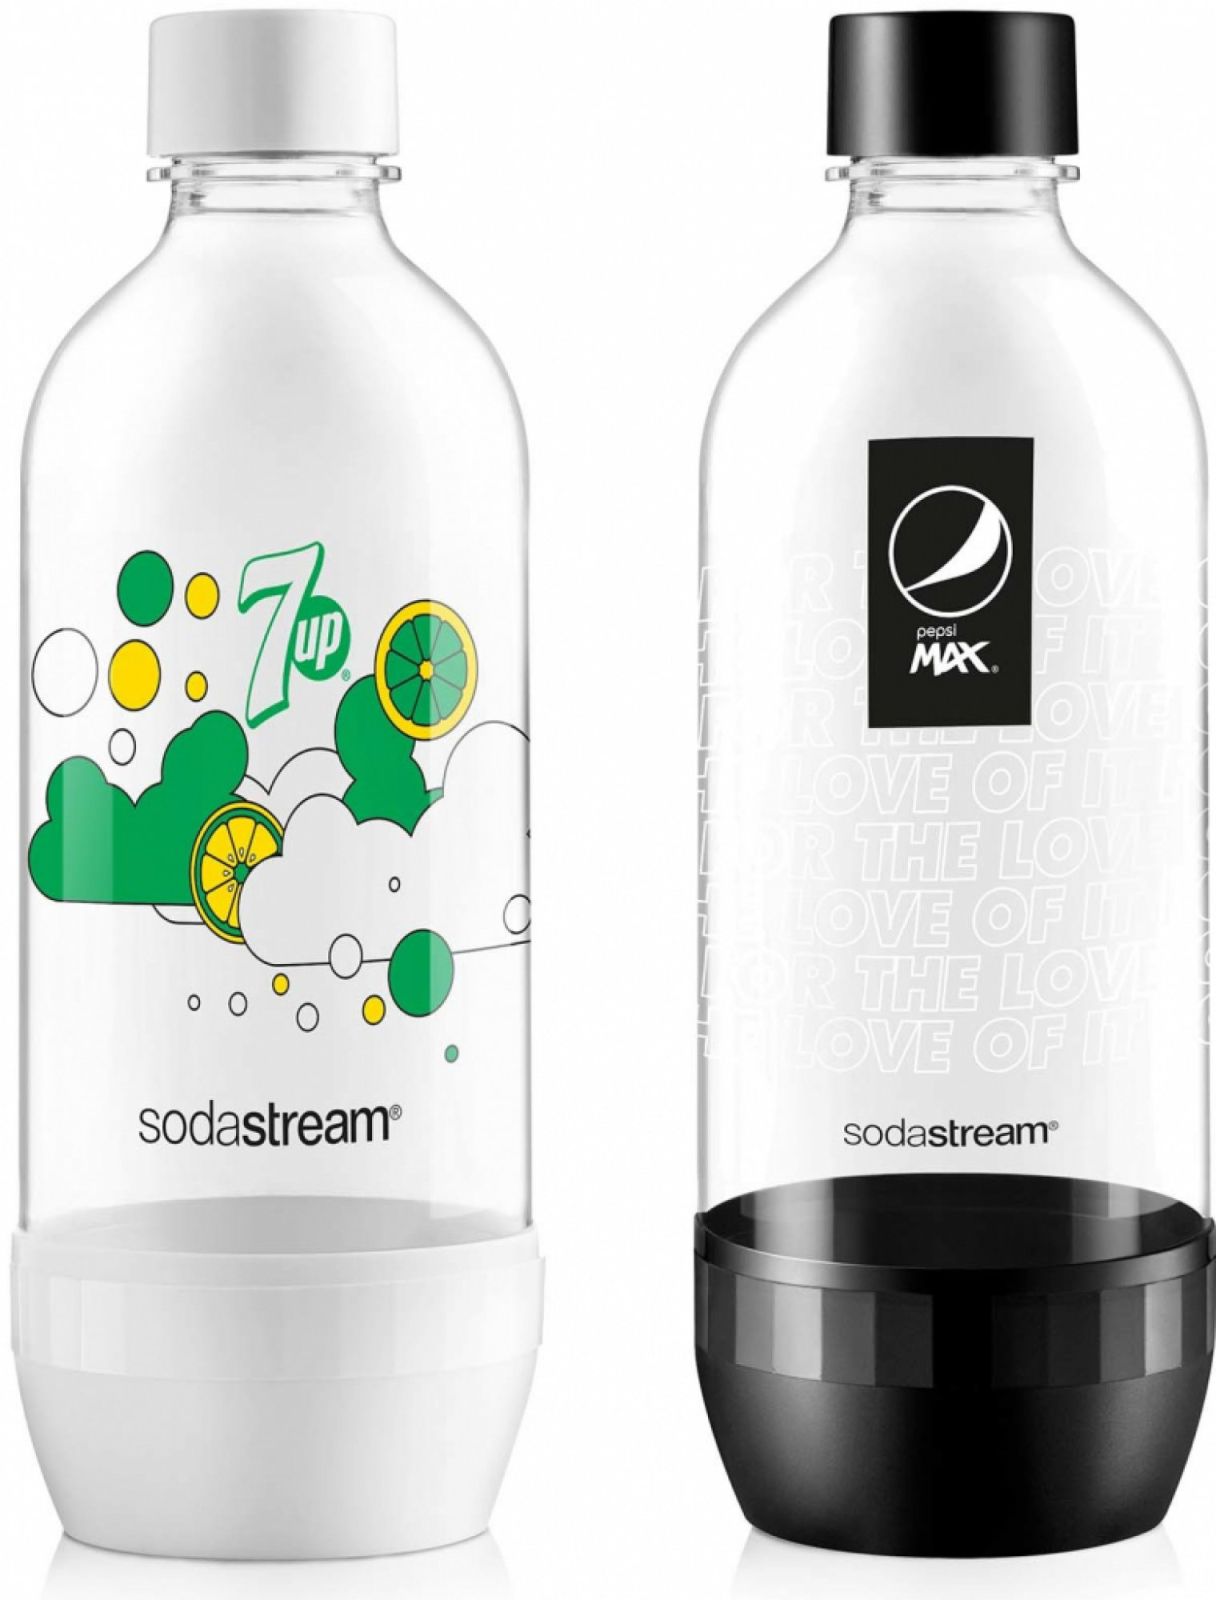 SodaStream láhev JET 7UP & Pepsi Max, 2 ks, 1l